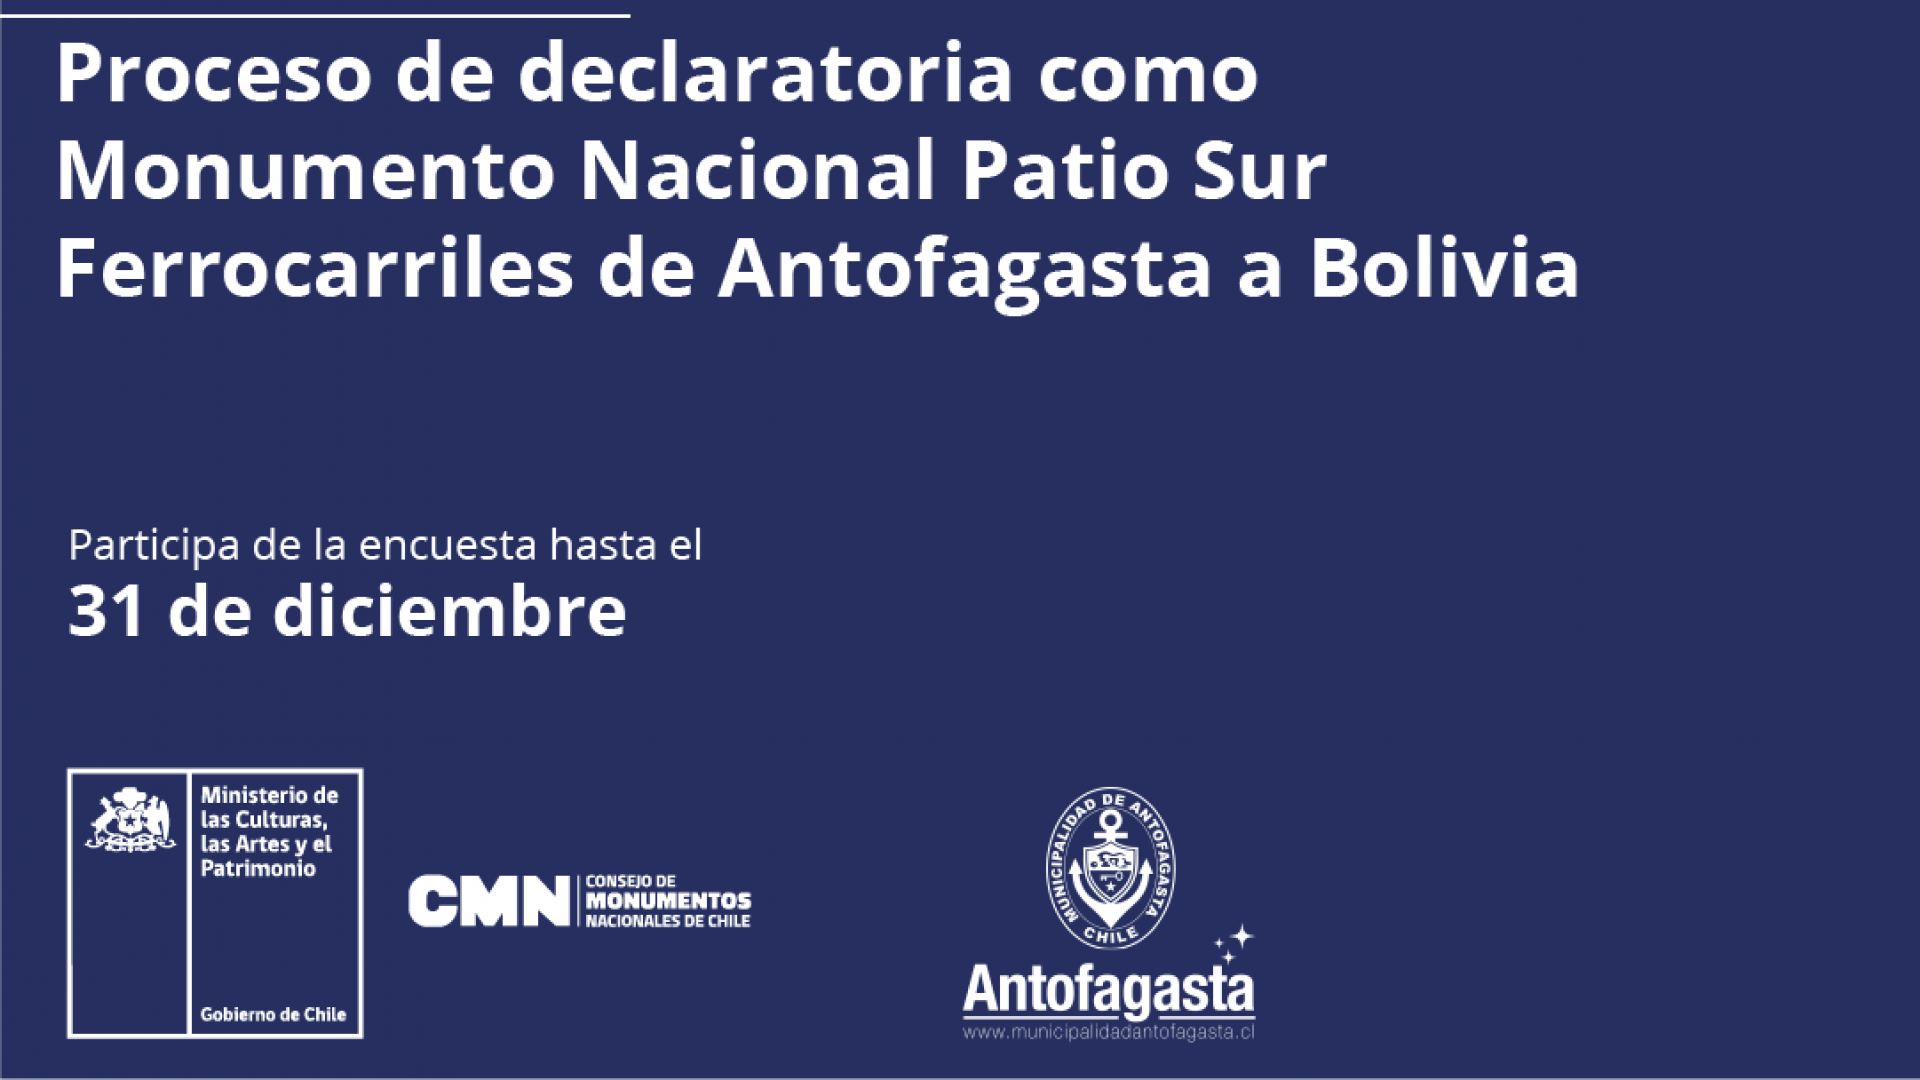 Imagen de Consulta ciudadana proceso de declaratoria como Monumento Nacional patio sur ferrocarriles de Antofagasta Bolivia